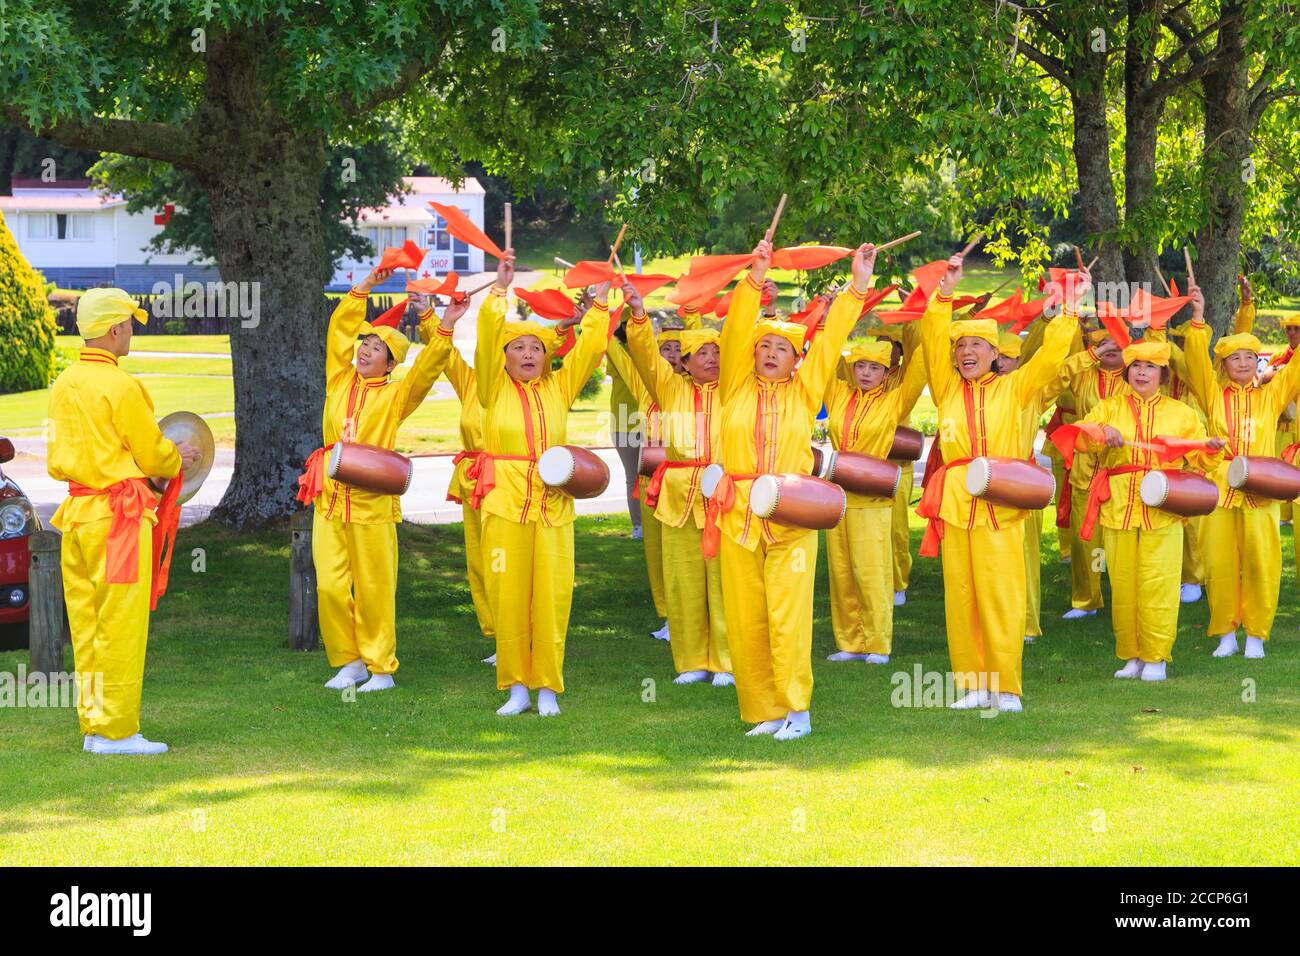 Mitglieder von Falun Dafa, auch bekannt als Falun Gong, einer chinesischen religiösen Bewegung, praktizieren einen Tanz mit Schals und Hüfttrommeln. Rotorua, Neuseeland, 12/8/2018 Stockfoto